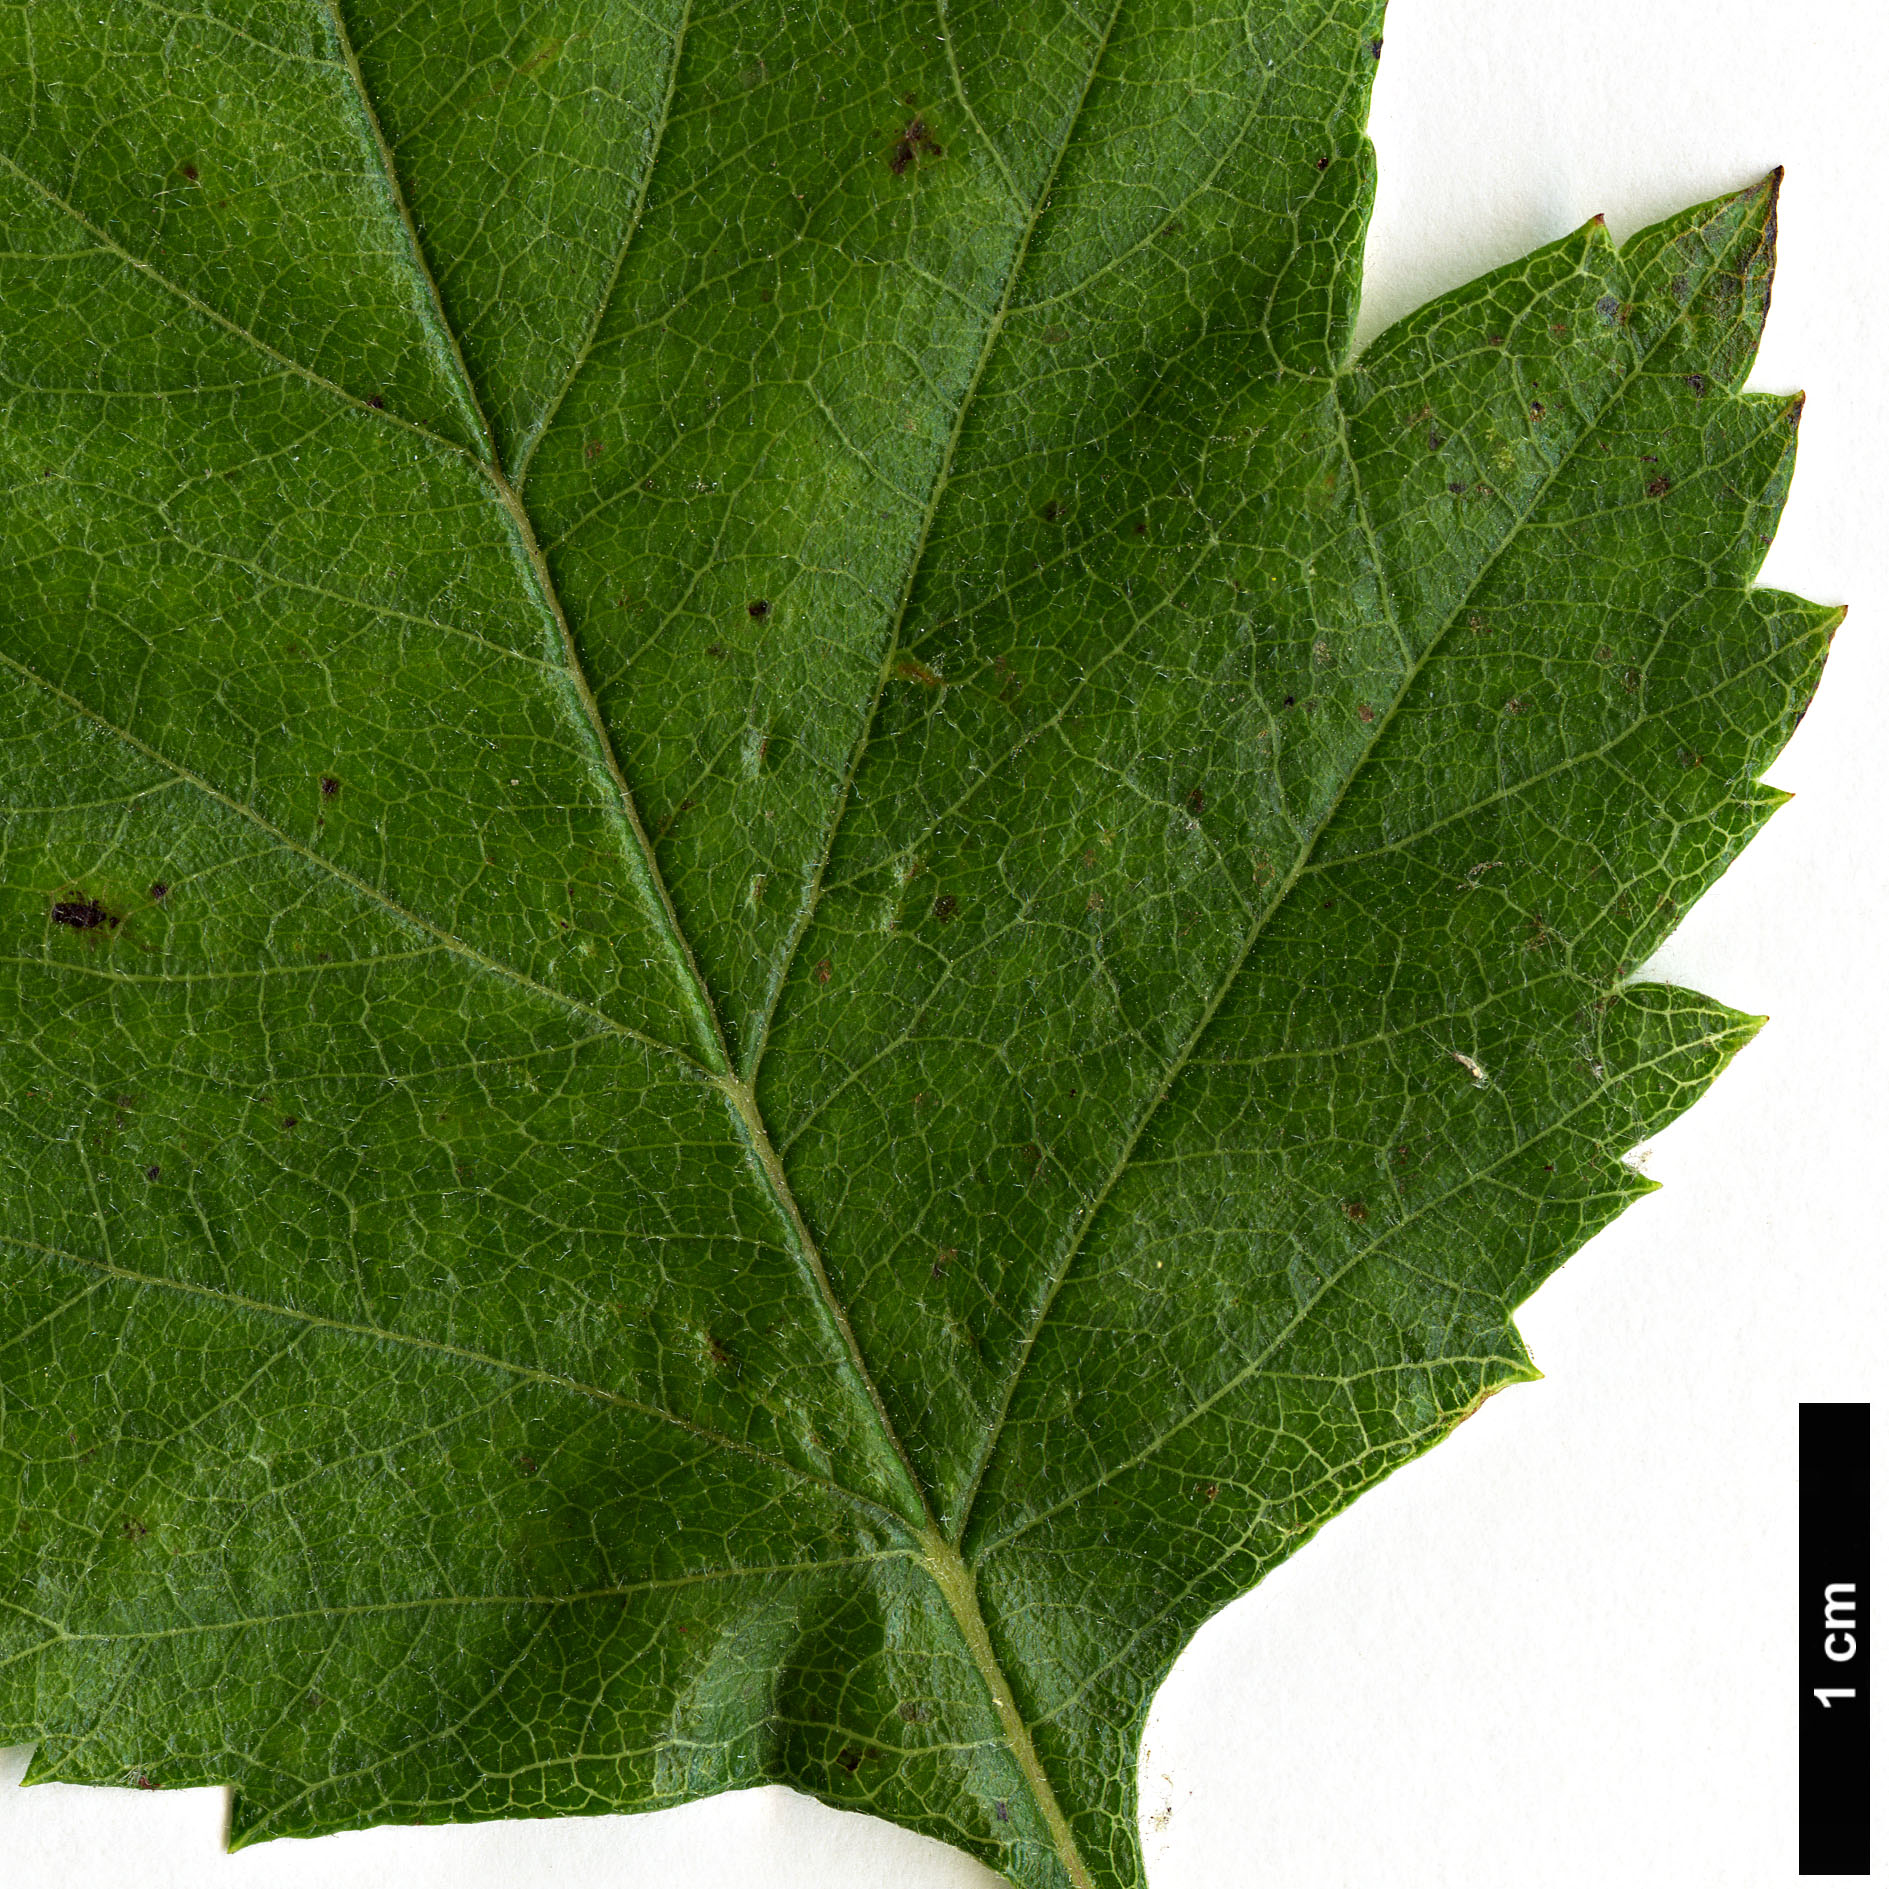 High resolution image: Family: Rosaceae - Genus: Crataegus - Taxon: mollis - SpeciesSub: var. viburnifolia